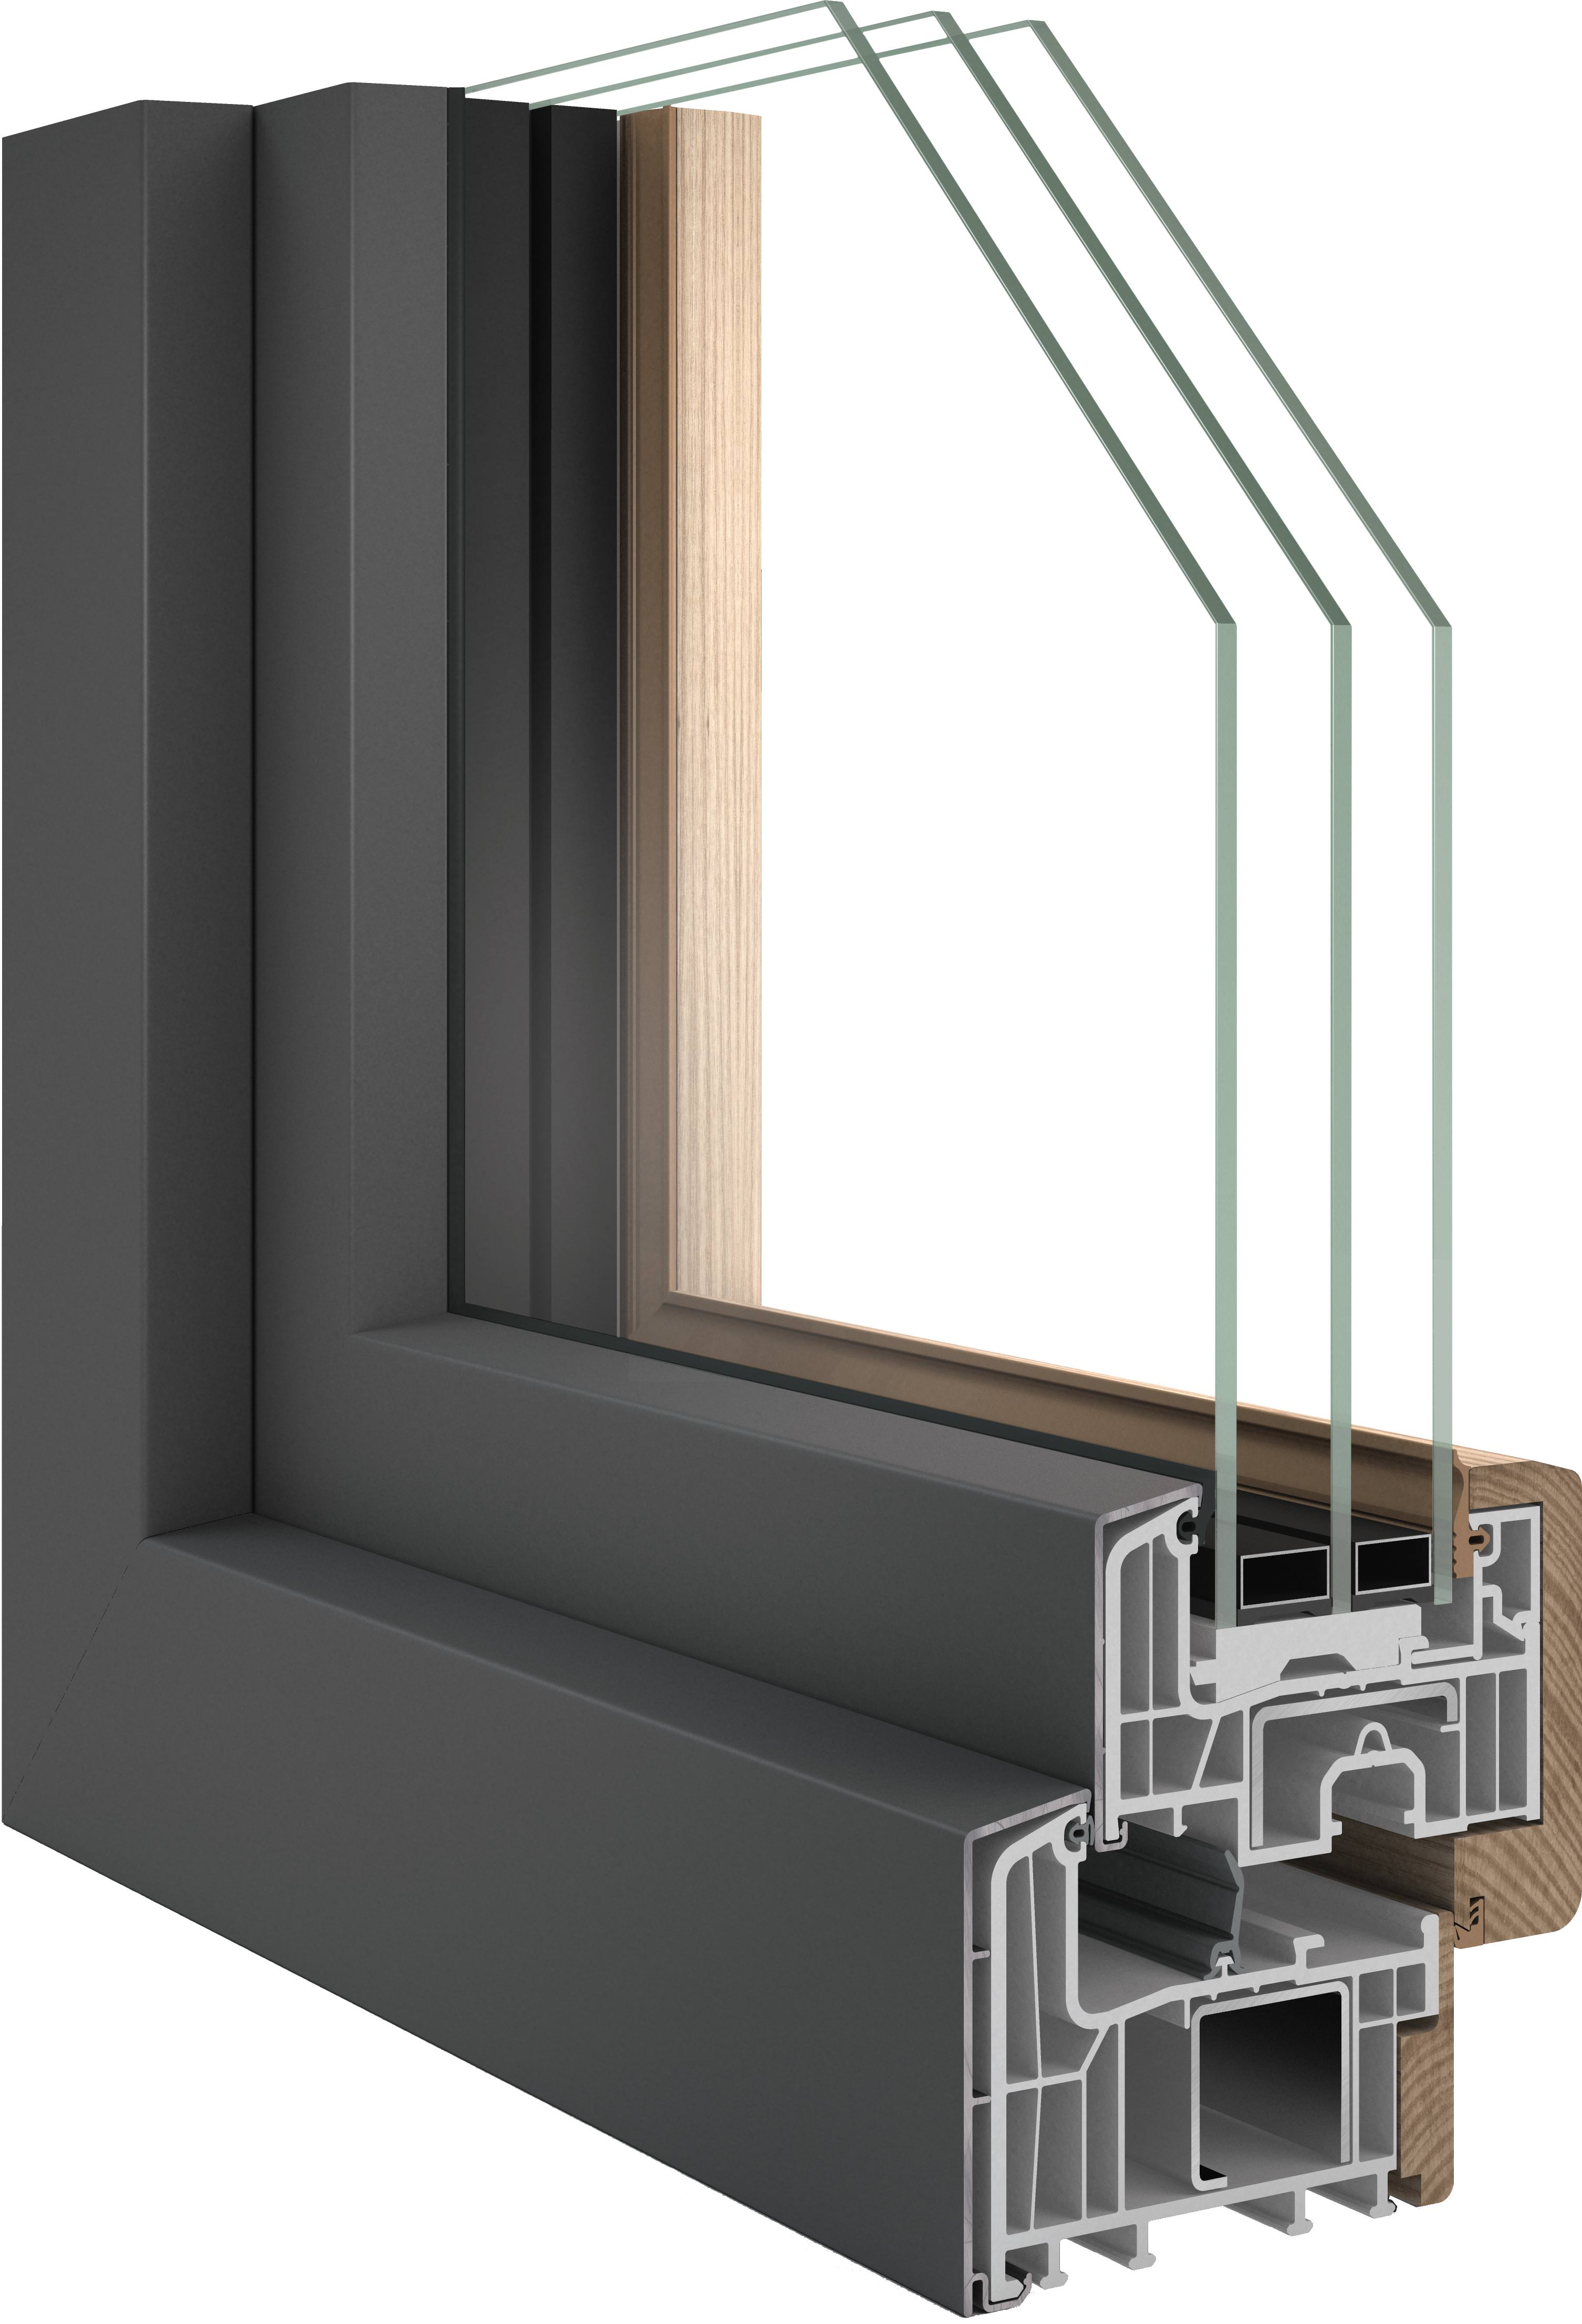 Inoutic fusioniert Kunststoff, Echtholz und Aluminium für neues Fenster